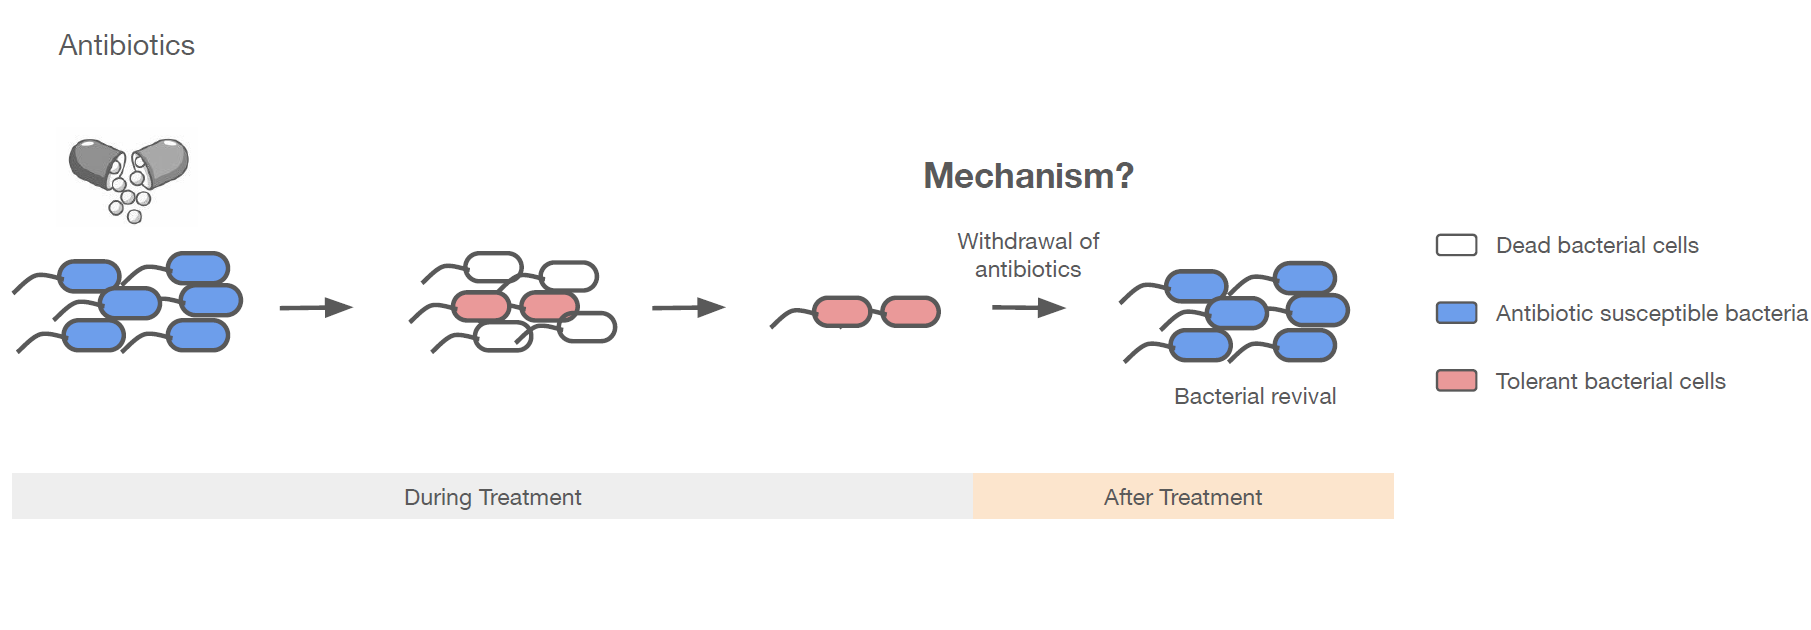 Systembiologischer Ansatz zur Aufklärung der bakteriellen Wiederbelebung nach Antibiotika-Behandlung